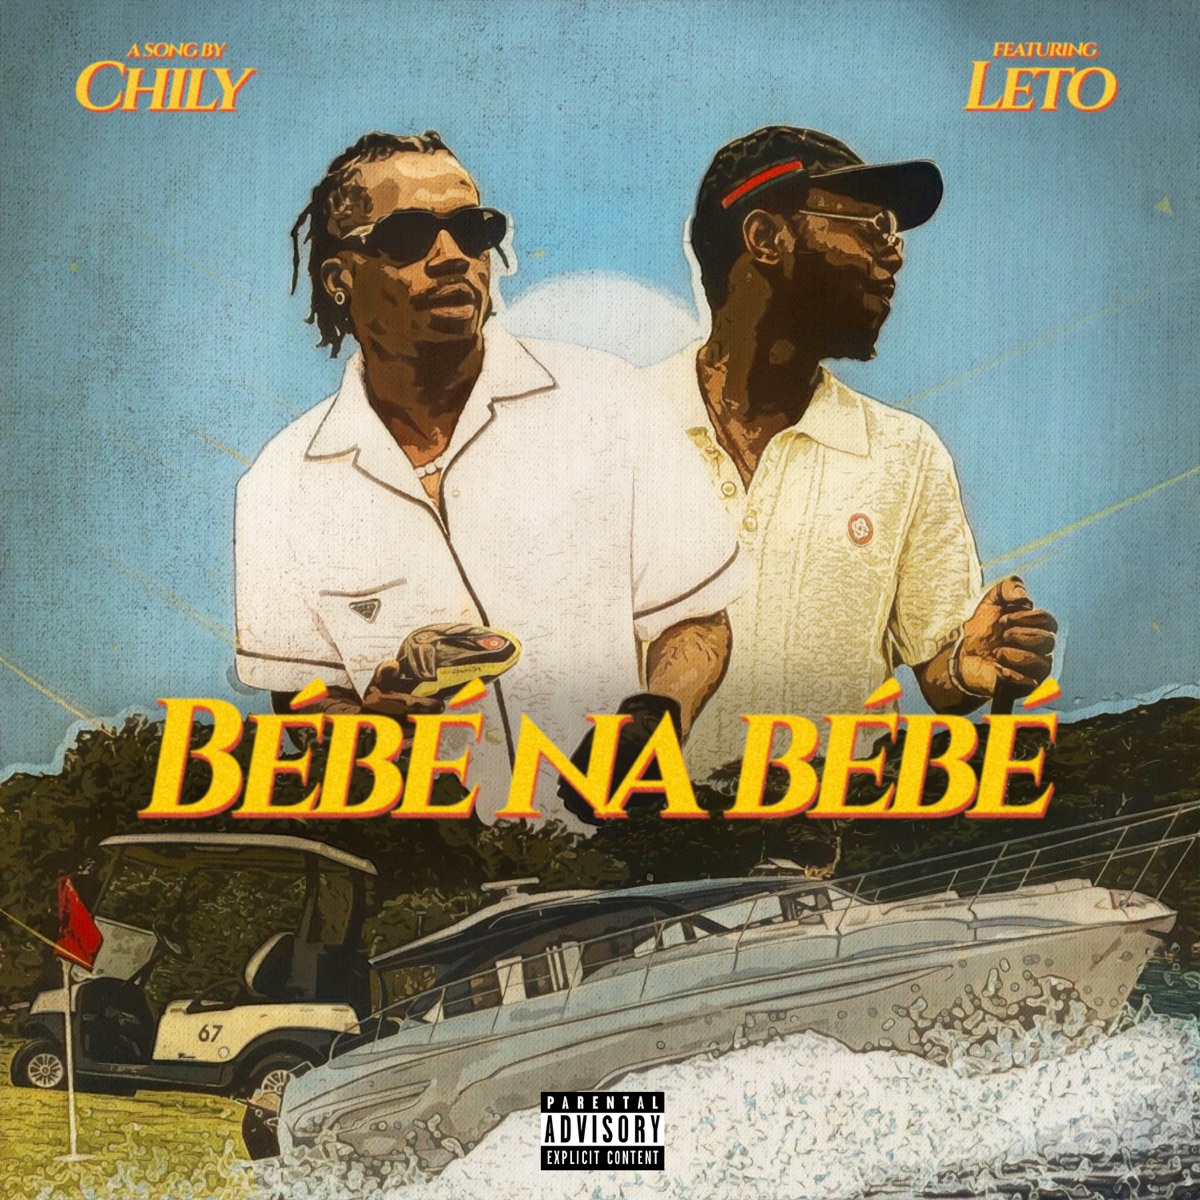 Bébé Na Bébé (feat. Leto) - Single by Chily on Apple Music